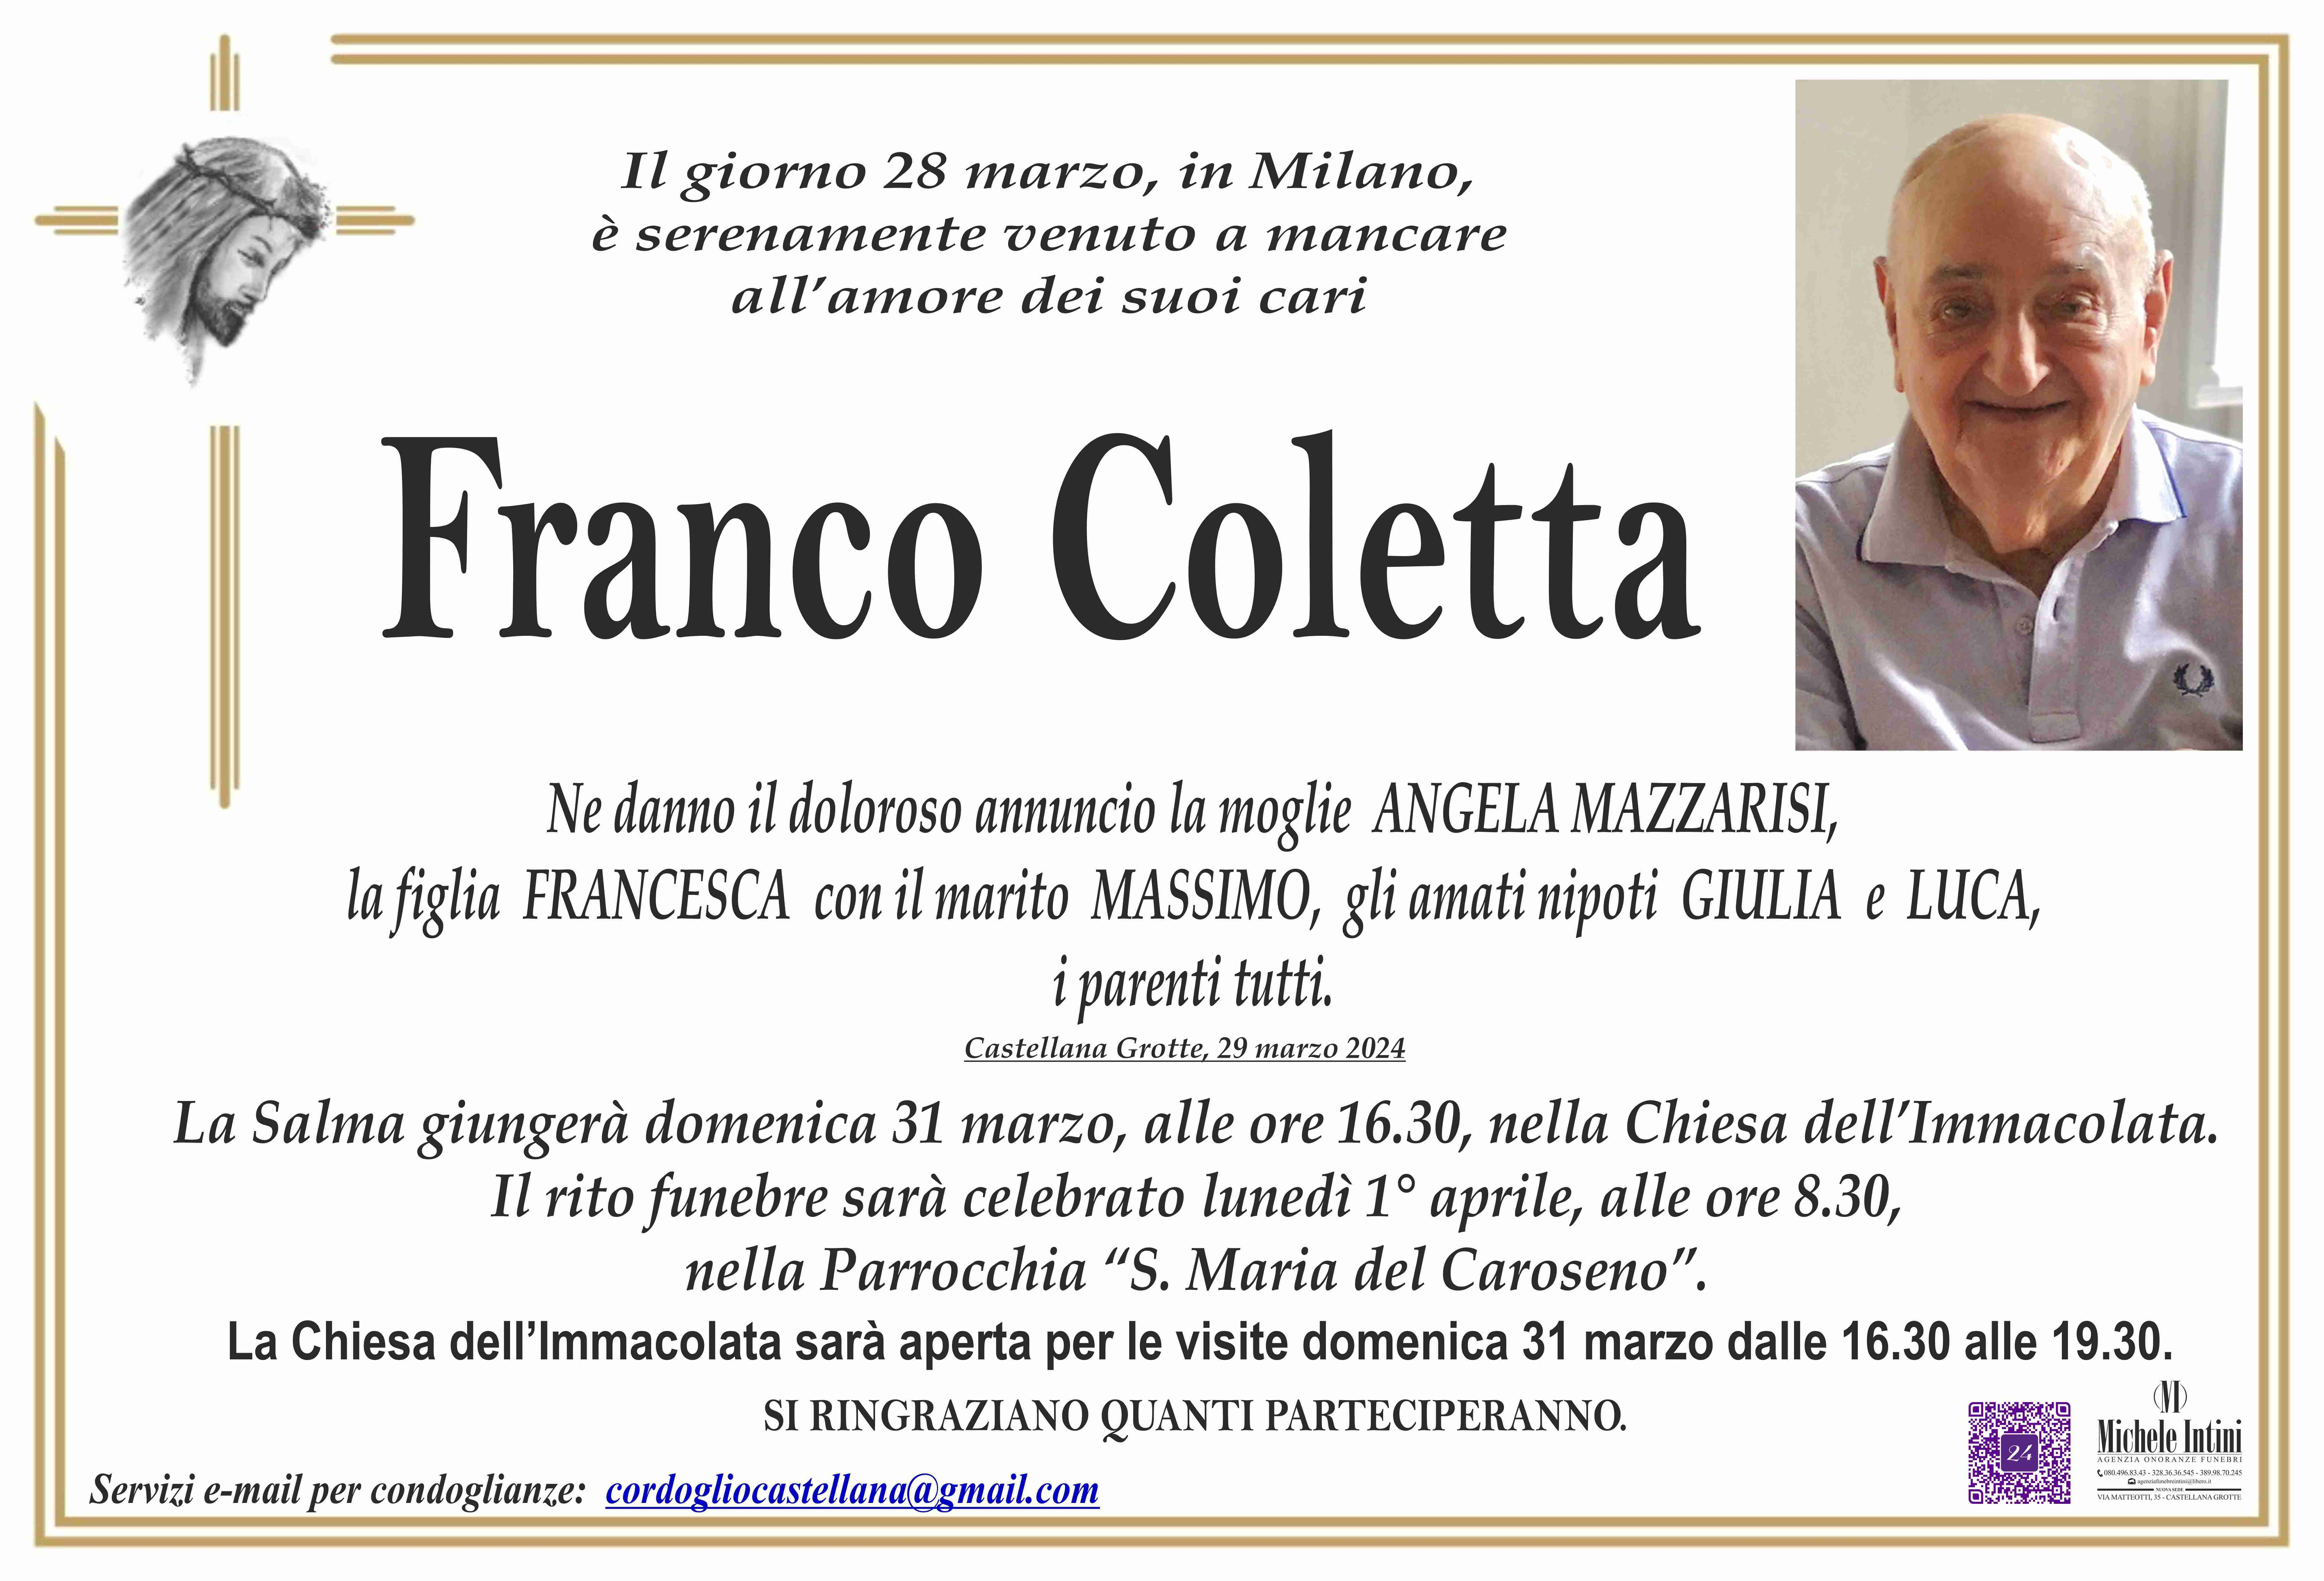 Franco Coletta